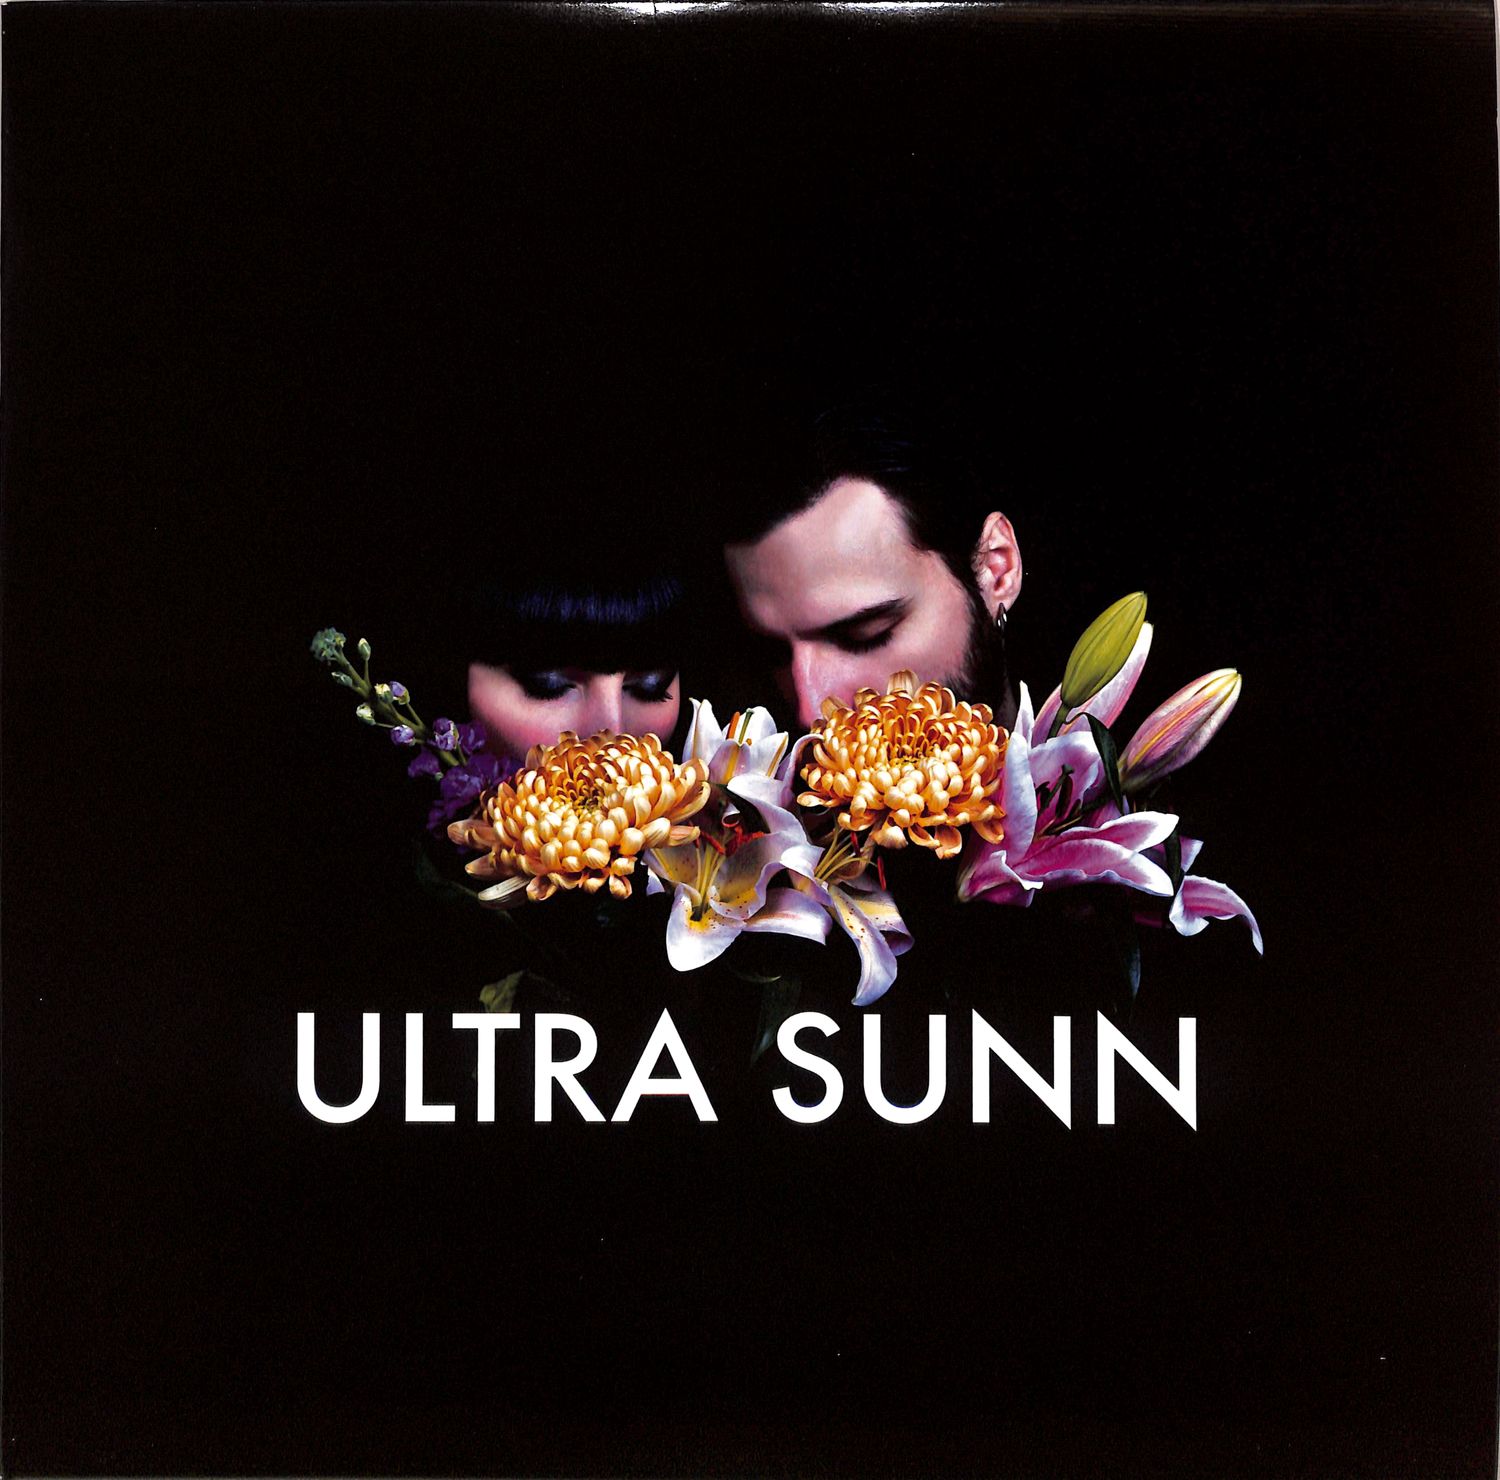 Ultra Sunn - NIGHT IS MINE EP 